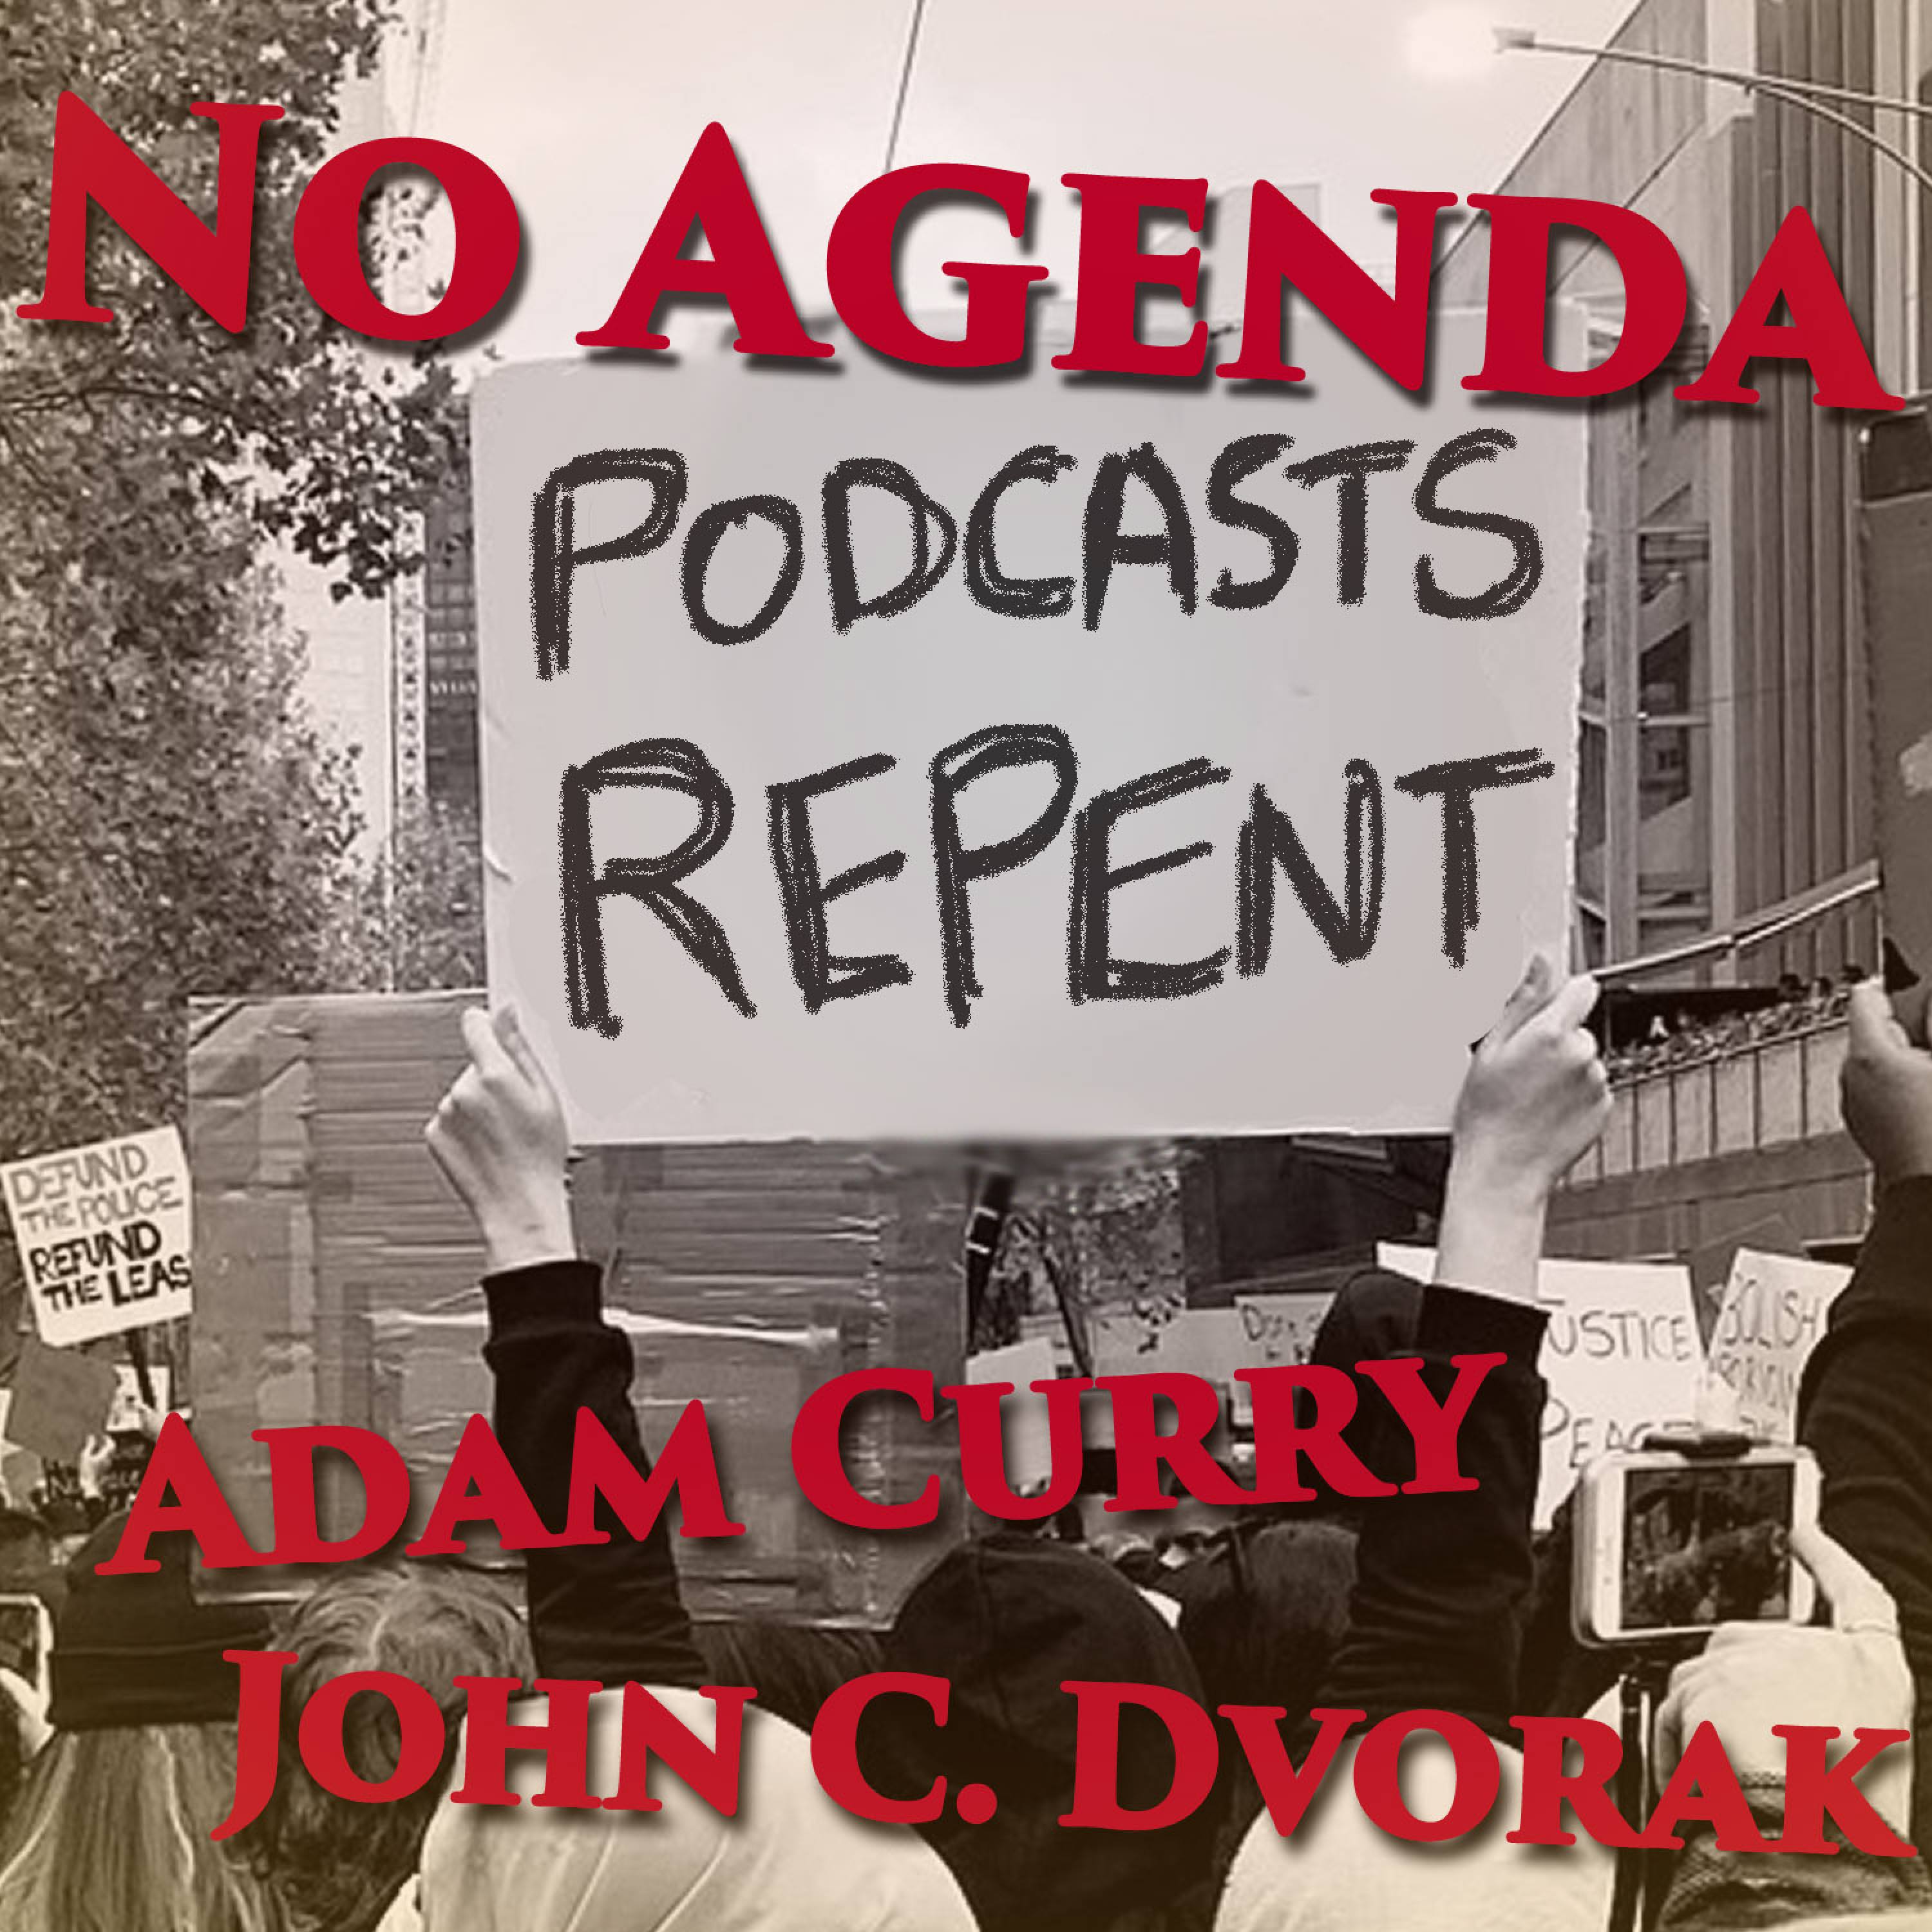 Podcasts Repent! by Matt Boisvert for 